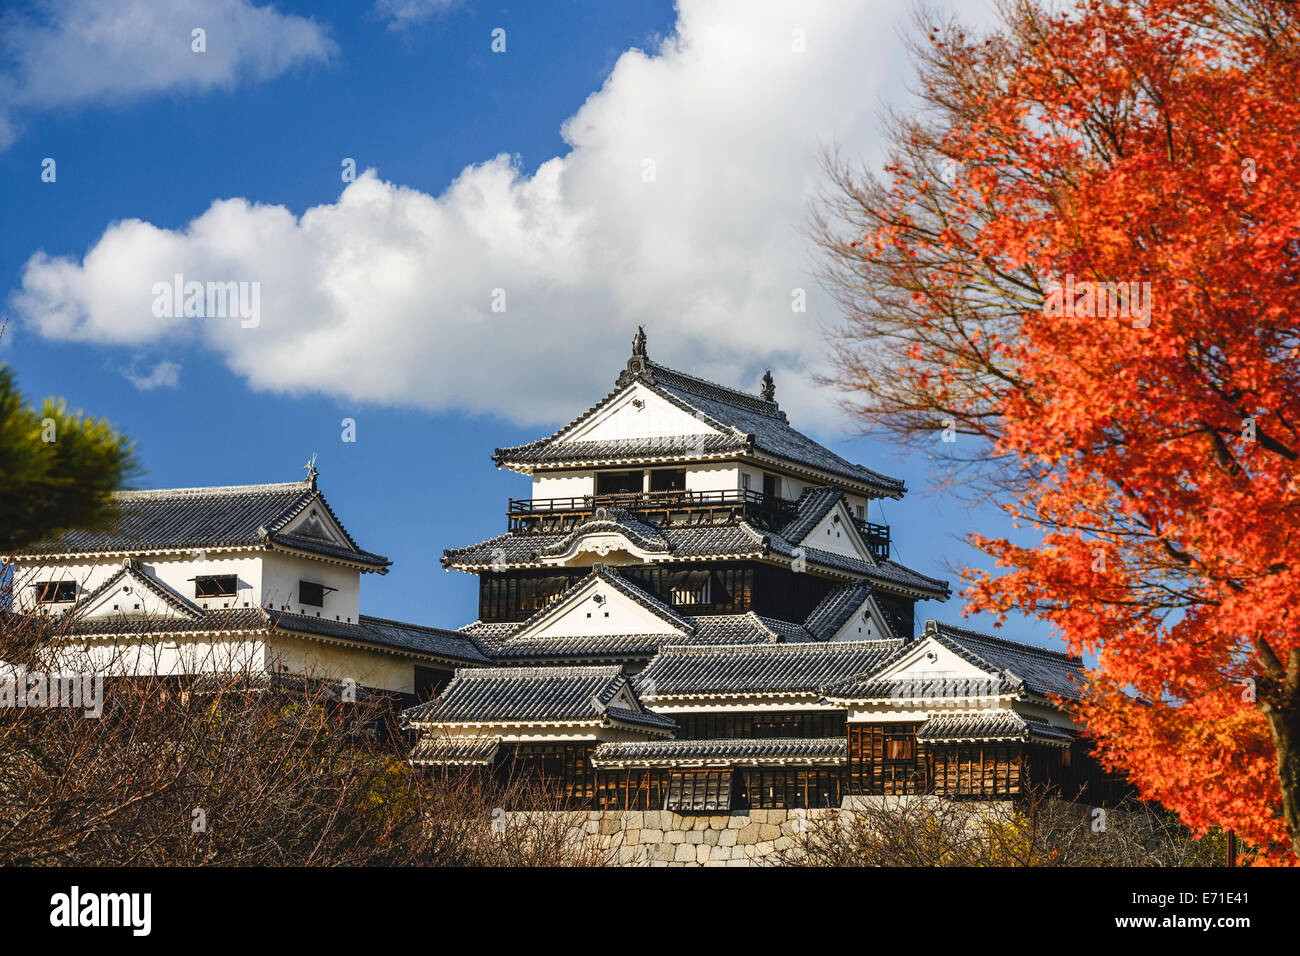 Matsuyama Castle in Matsuyama, Japan. Stock Photo